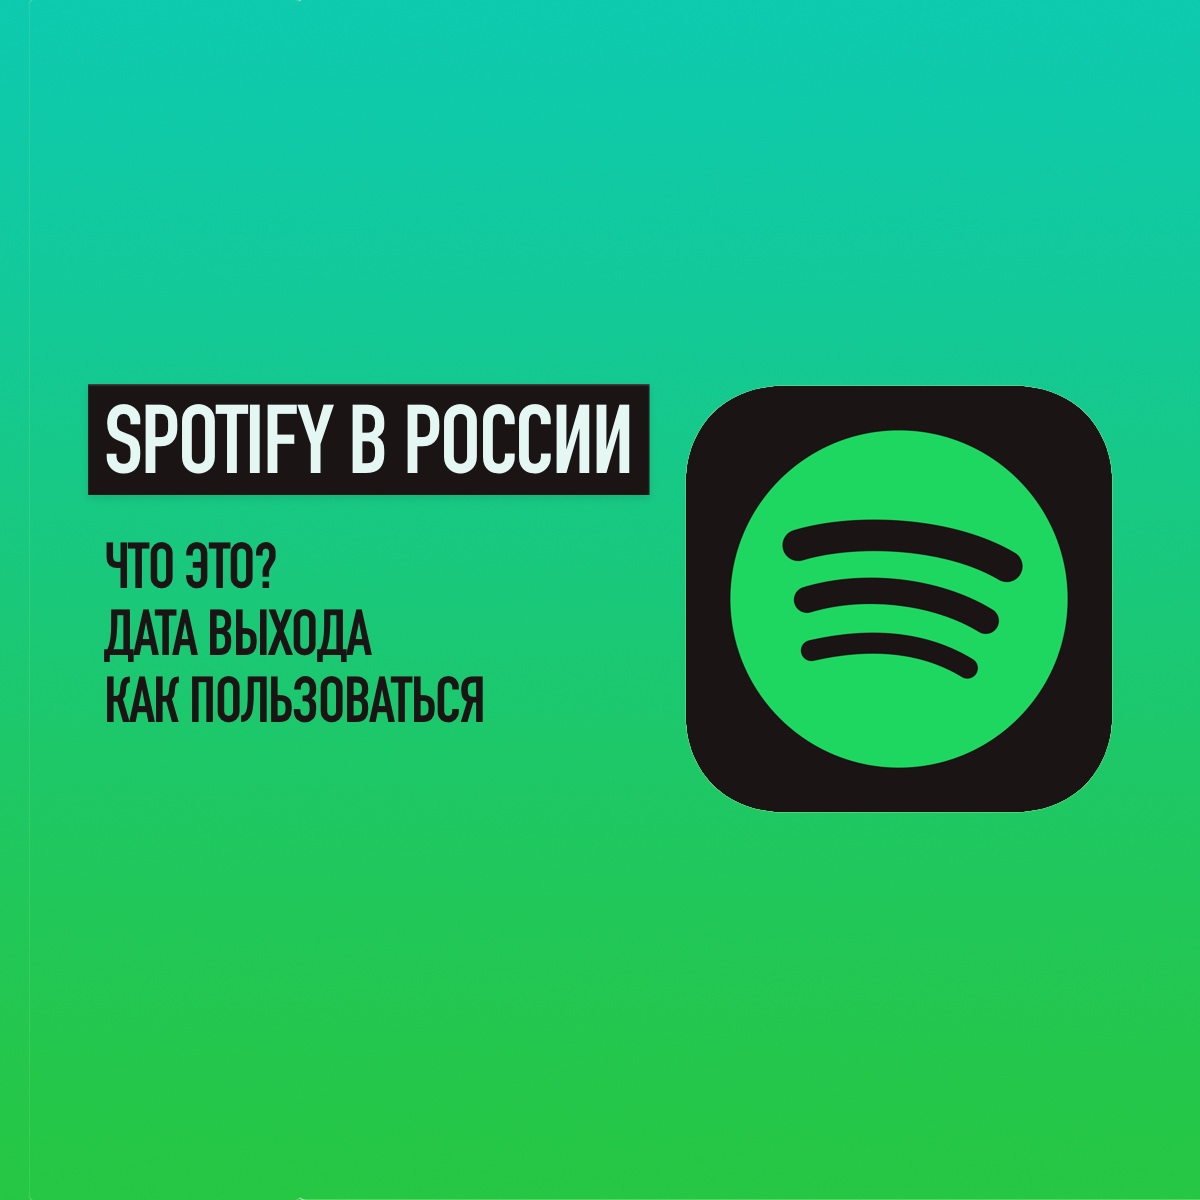 https://dj20.ru/wp-content/uploads/2020/02/spotify-in-russia.jpg